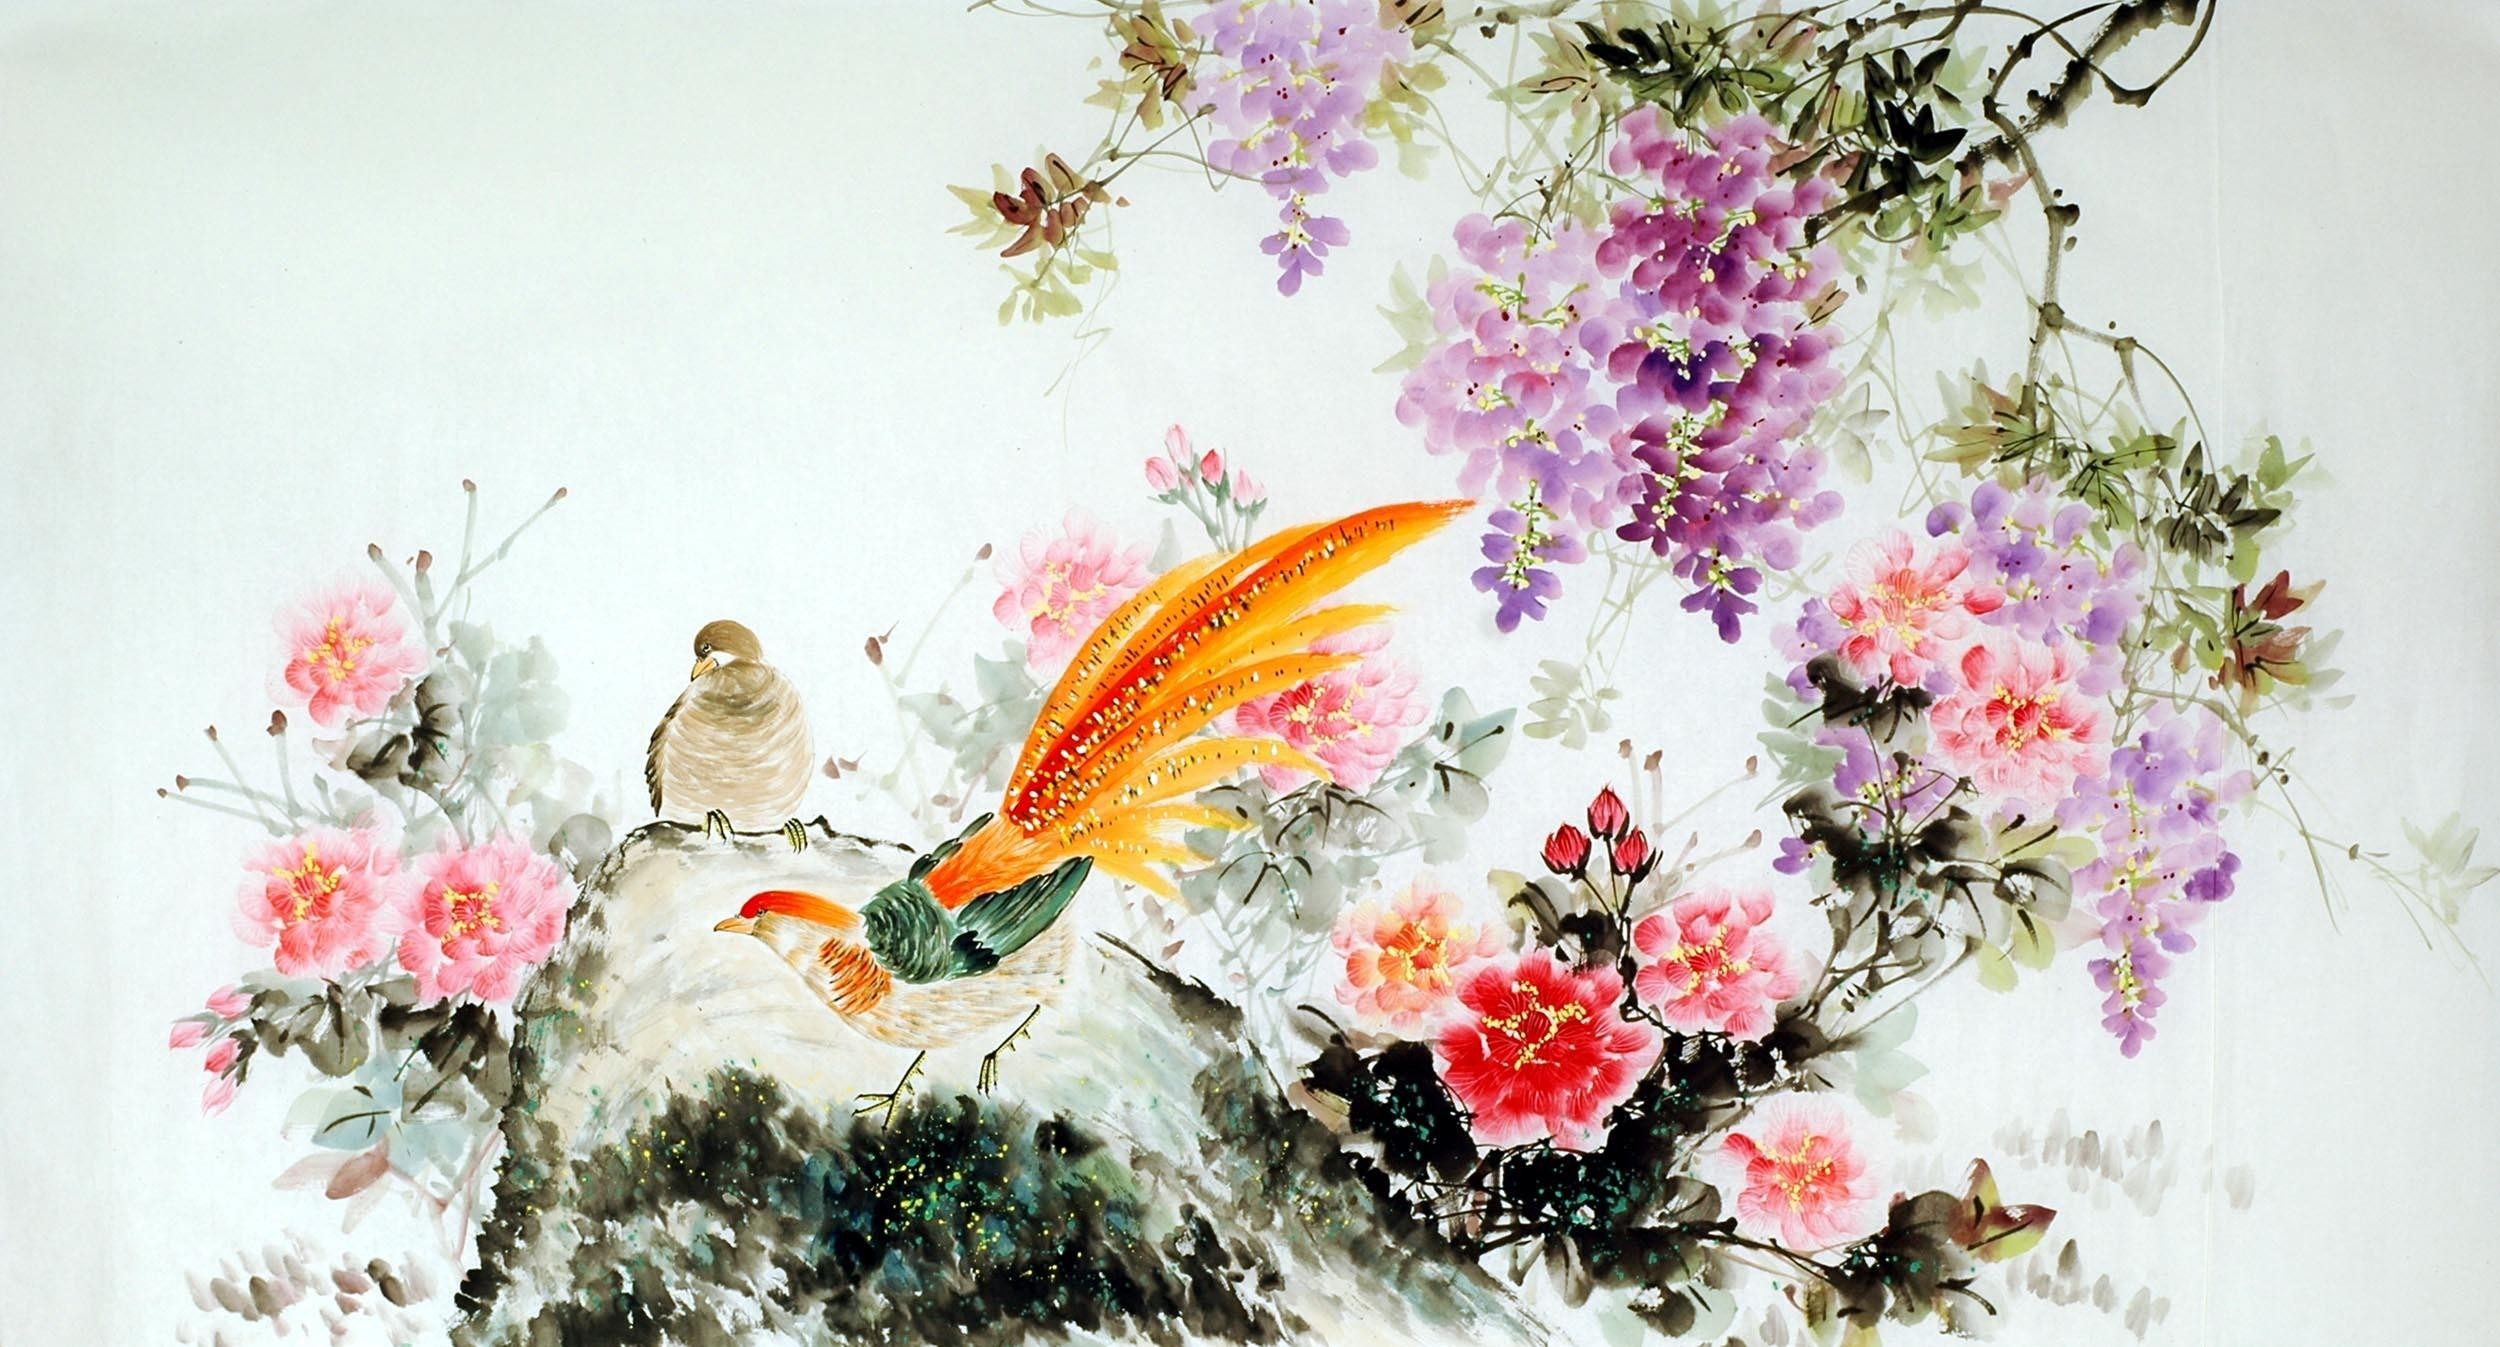 Chinese Chicken Painting - CNAG009296